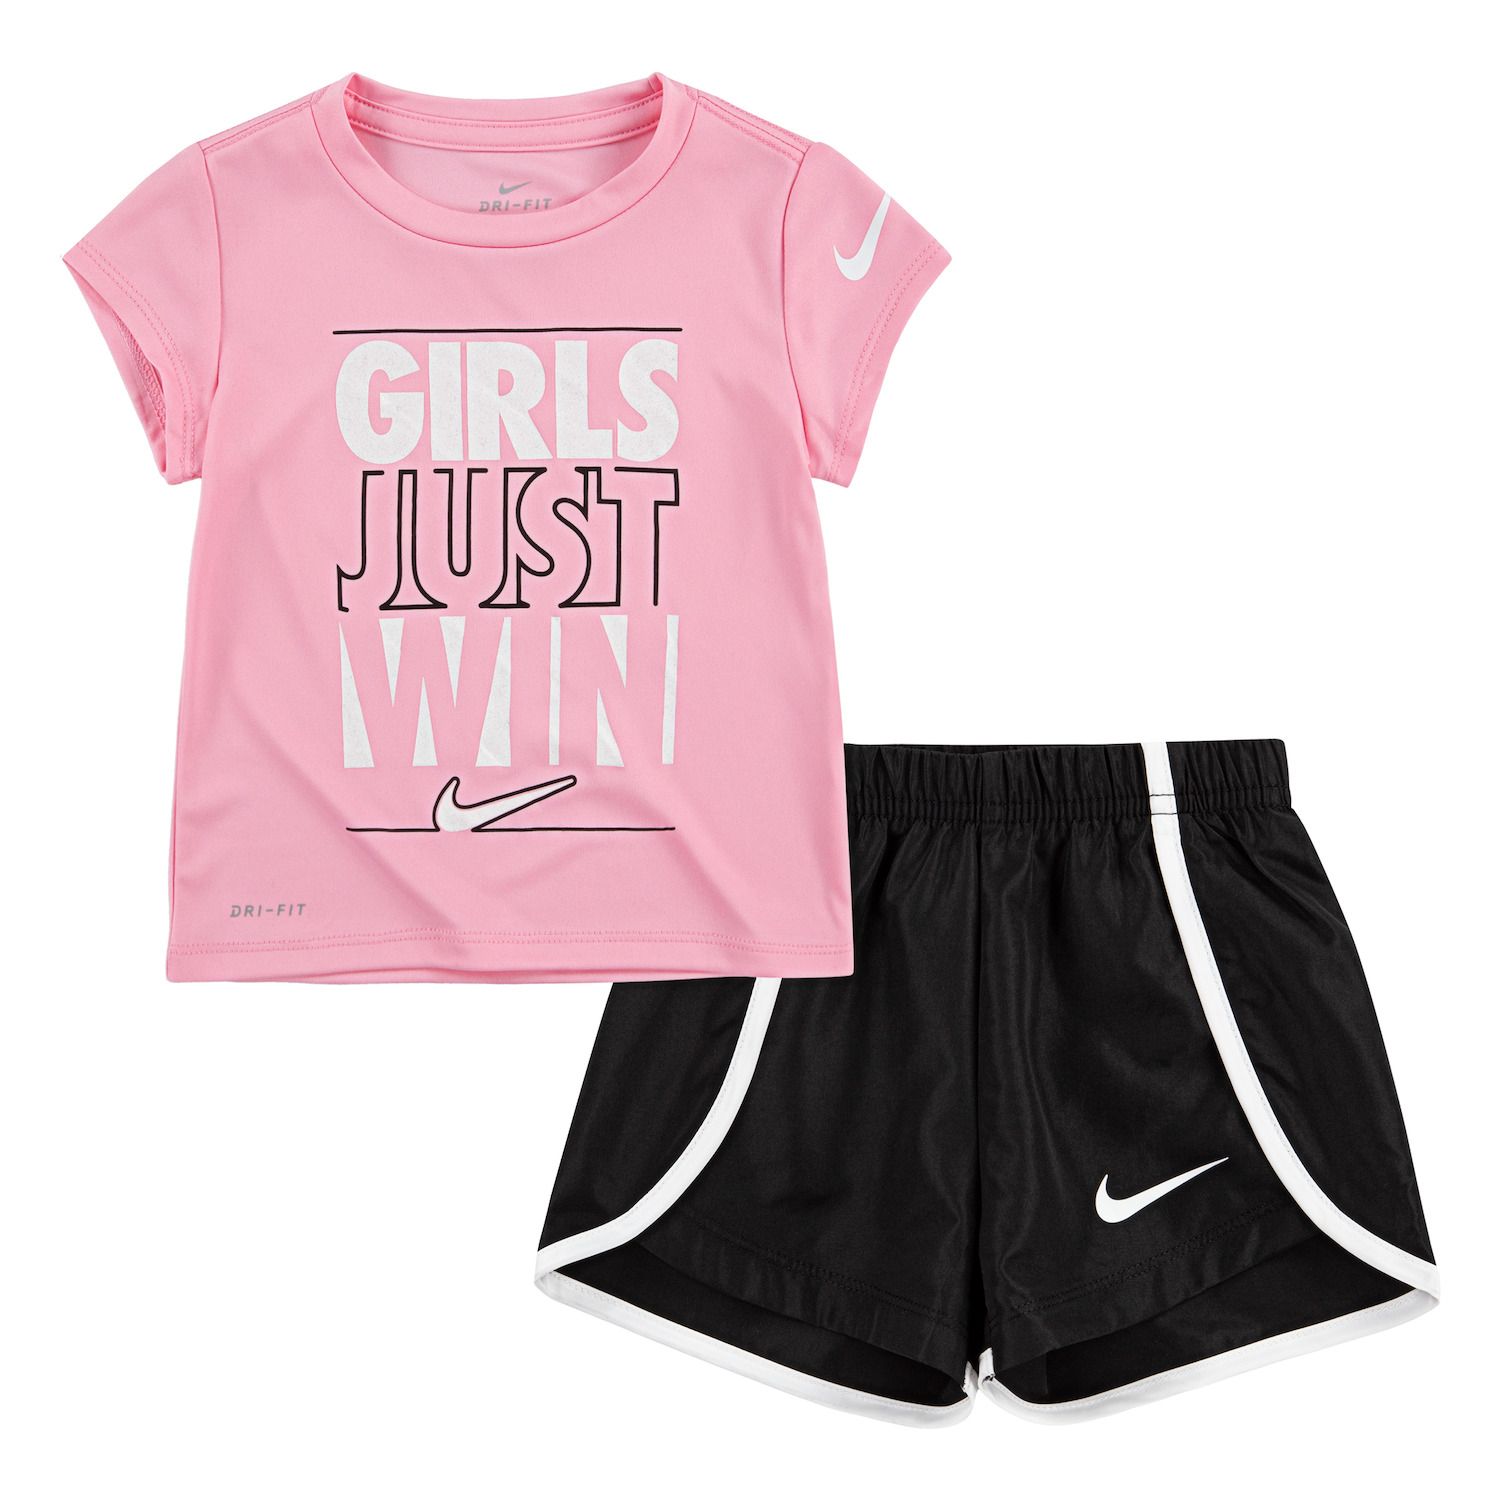 Girls Nike Kids Clothing Sets, Clothing 